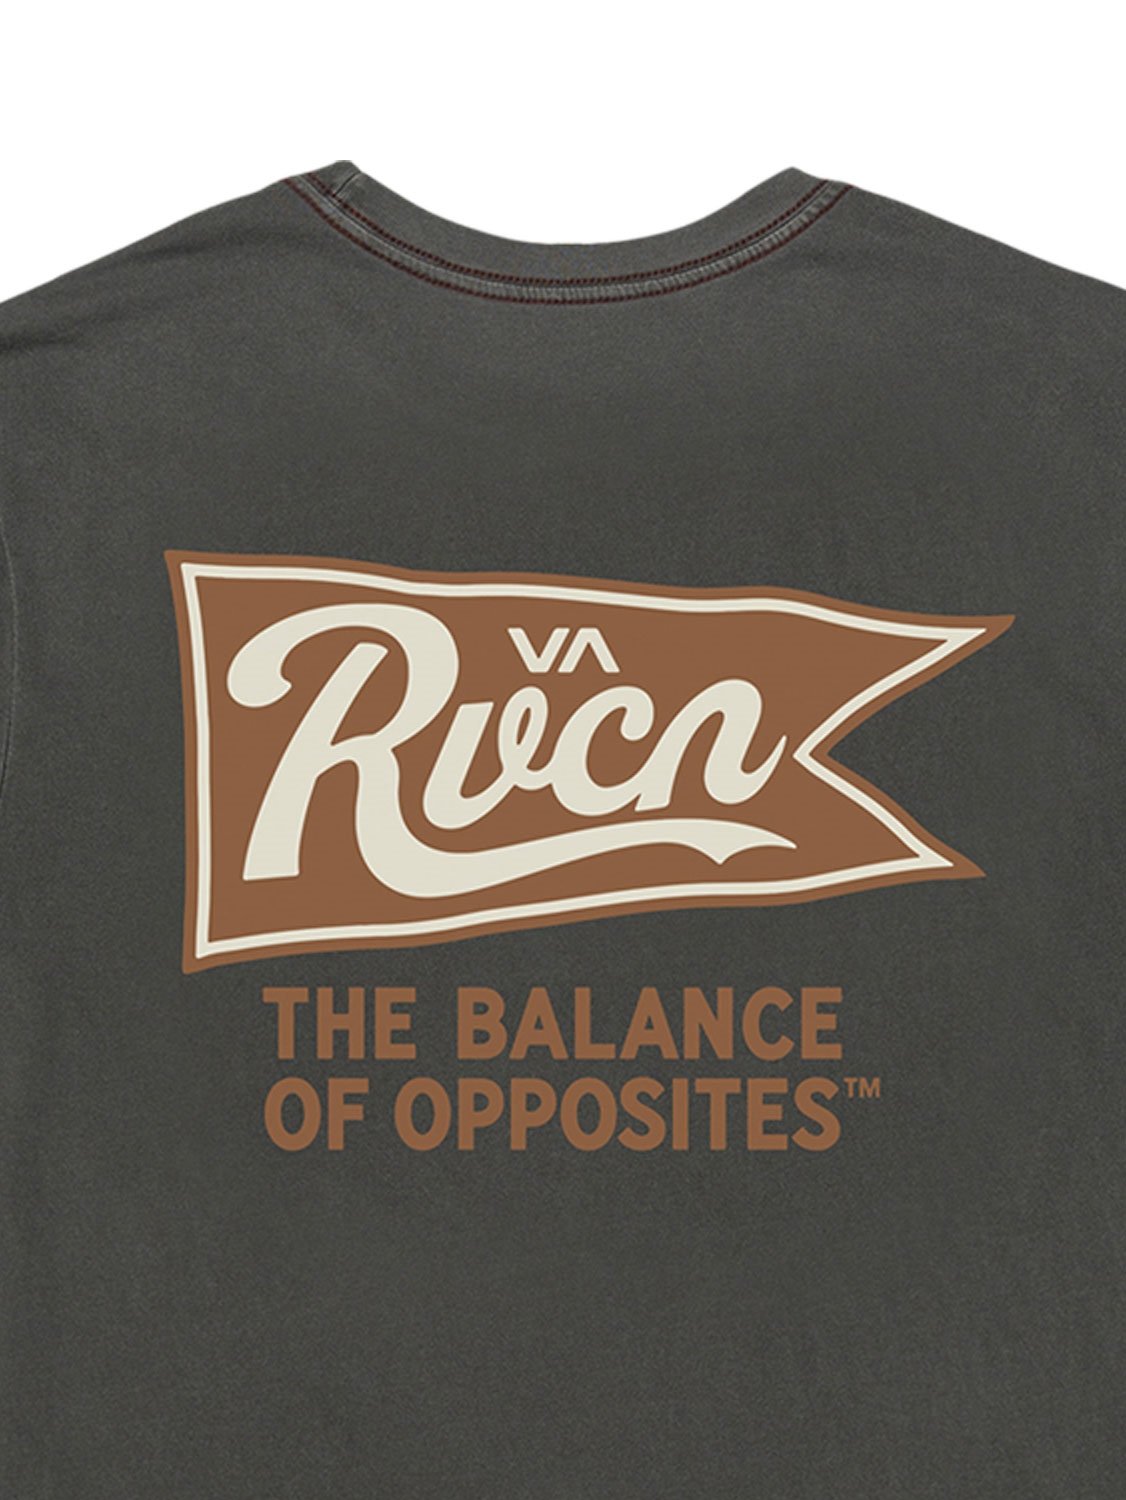 RVCA Men's Pennantan T-Shirt